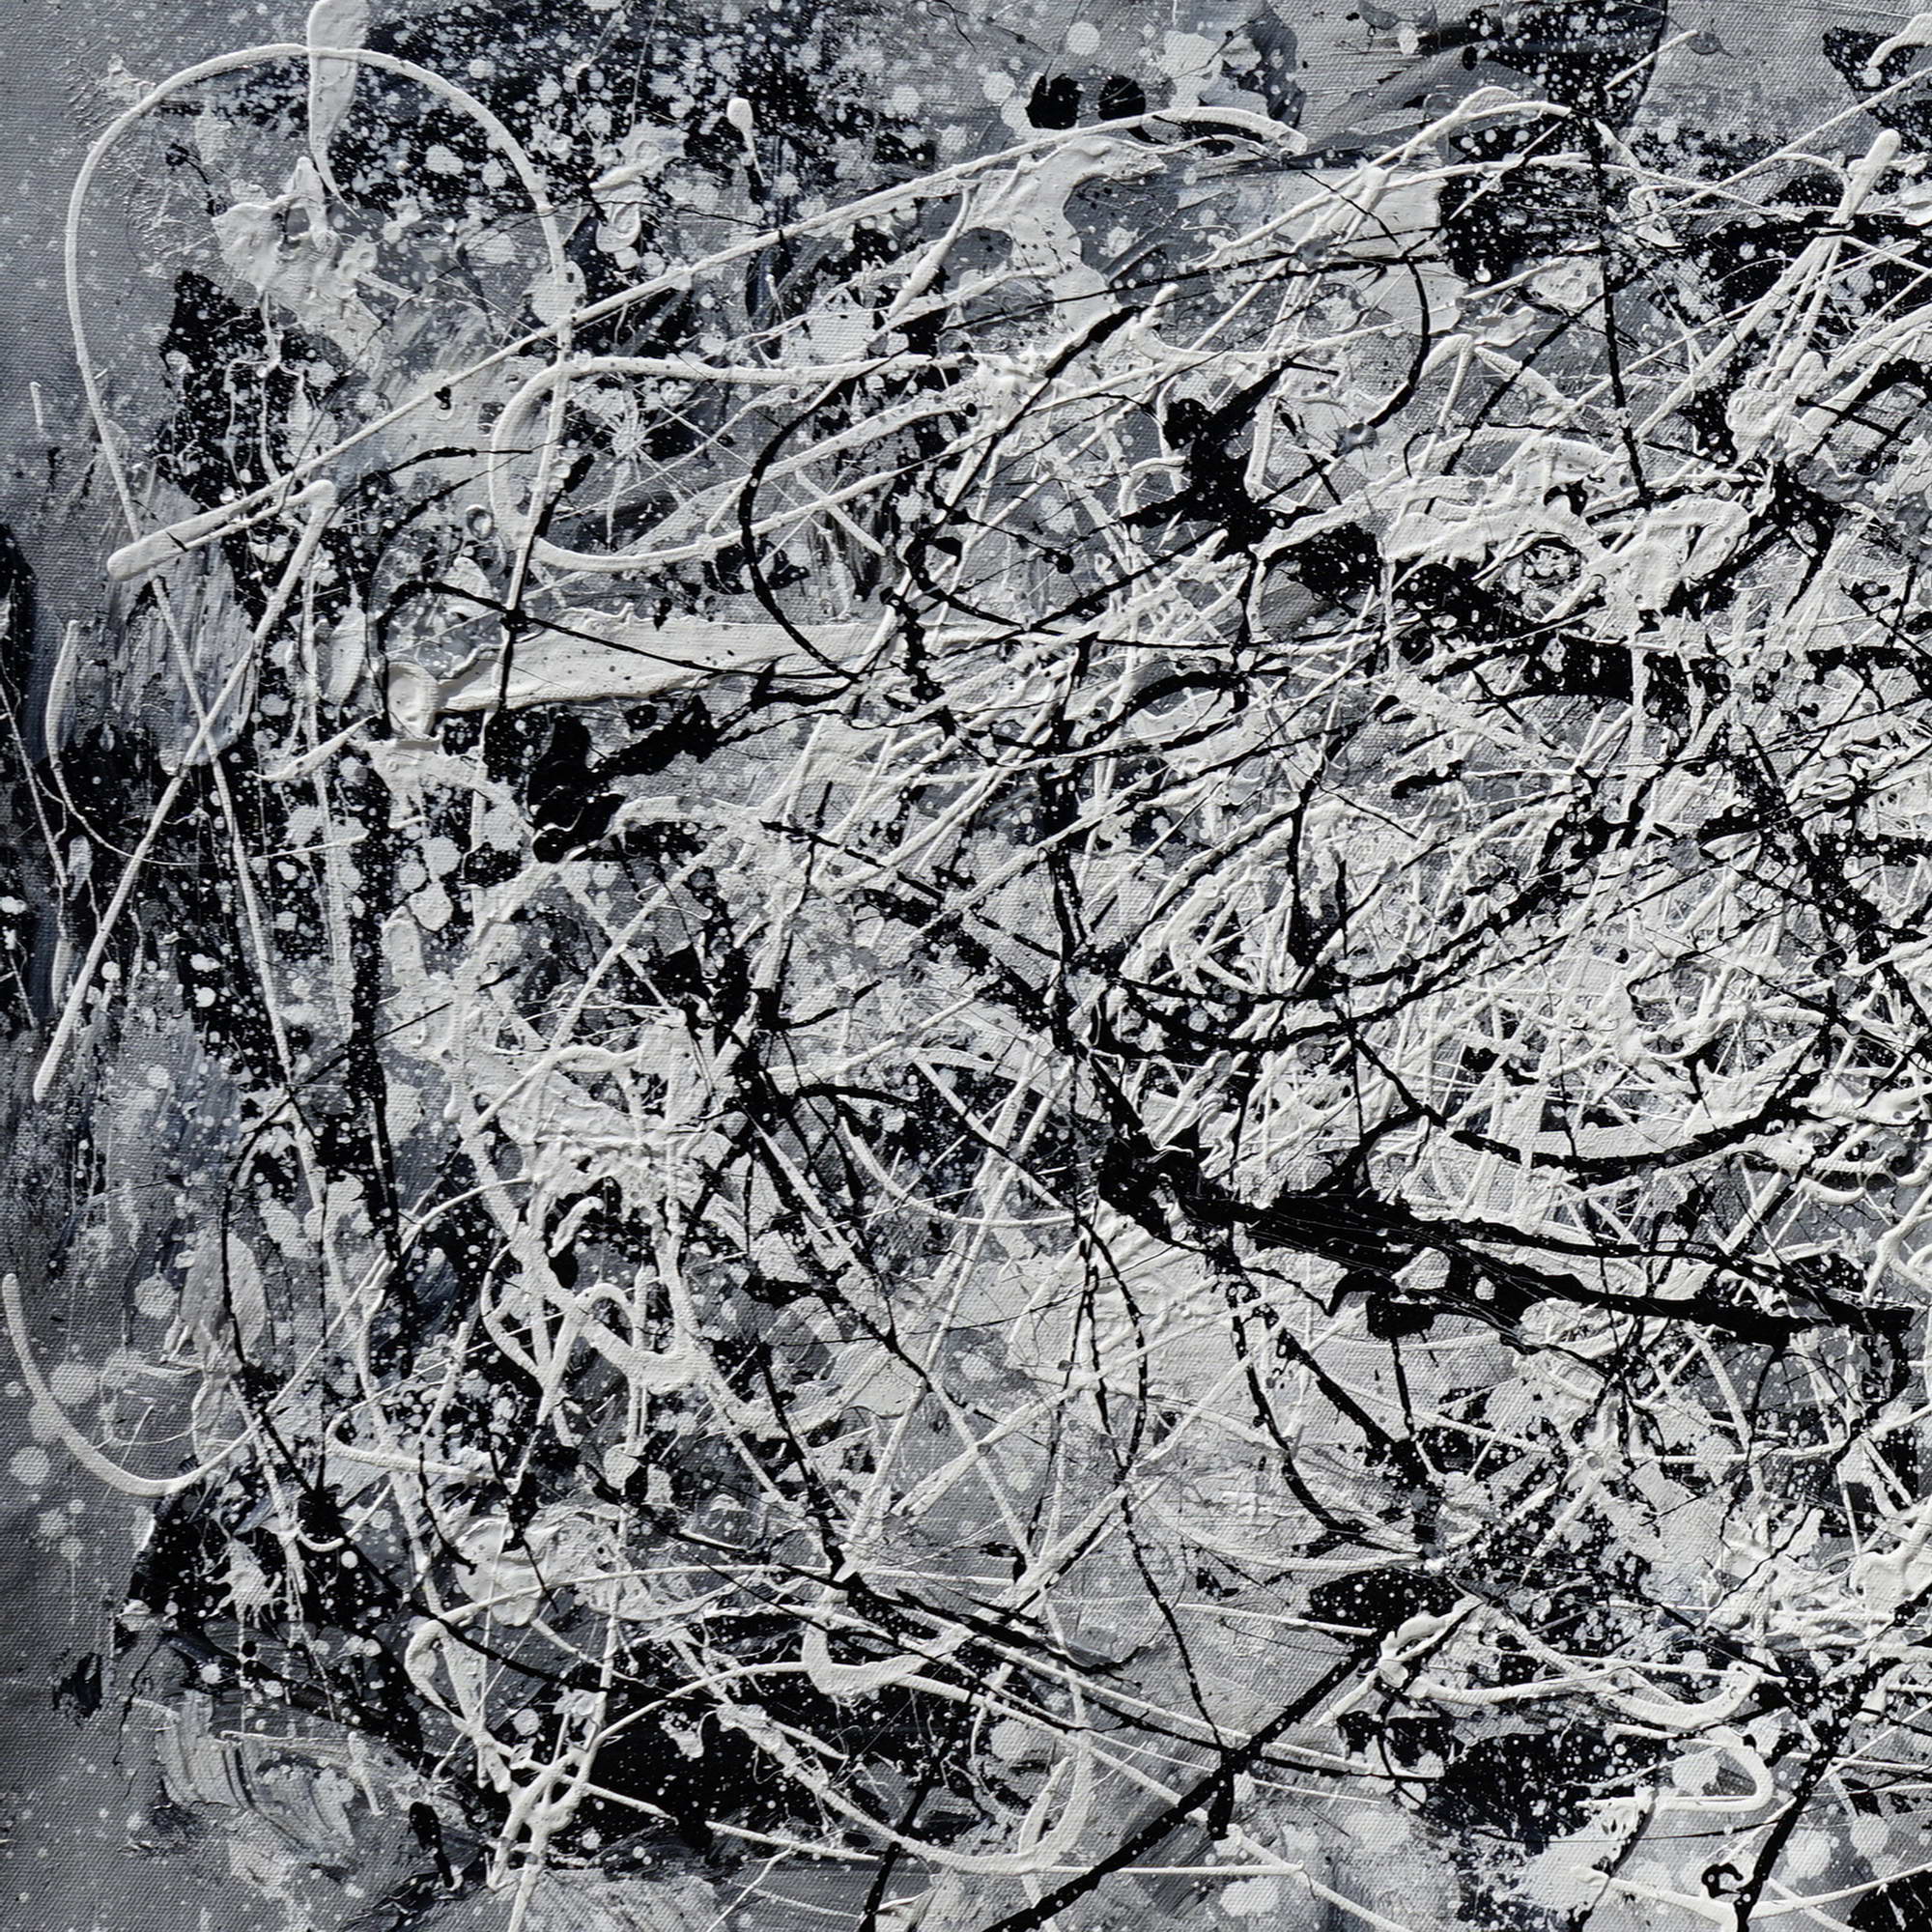 Style Pollock abstrait noir et blanc peint à la main 75x150cm